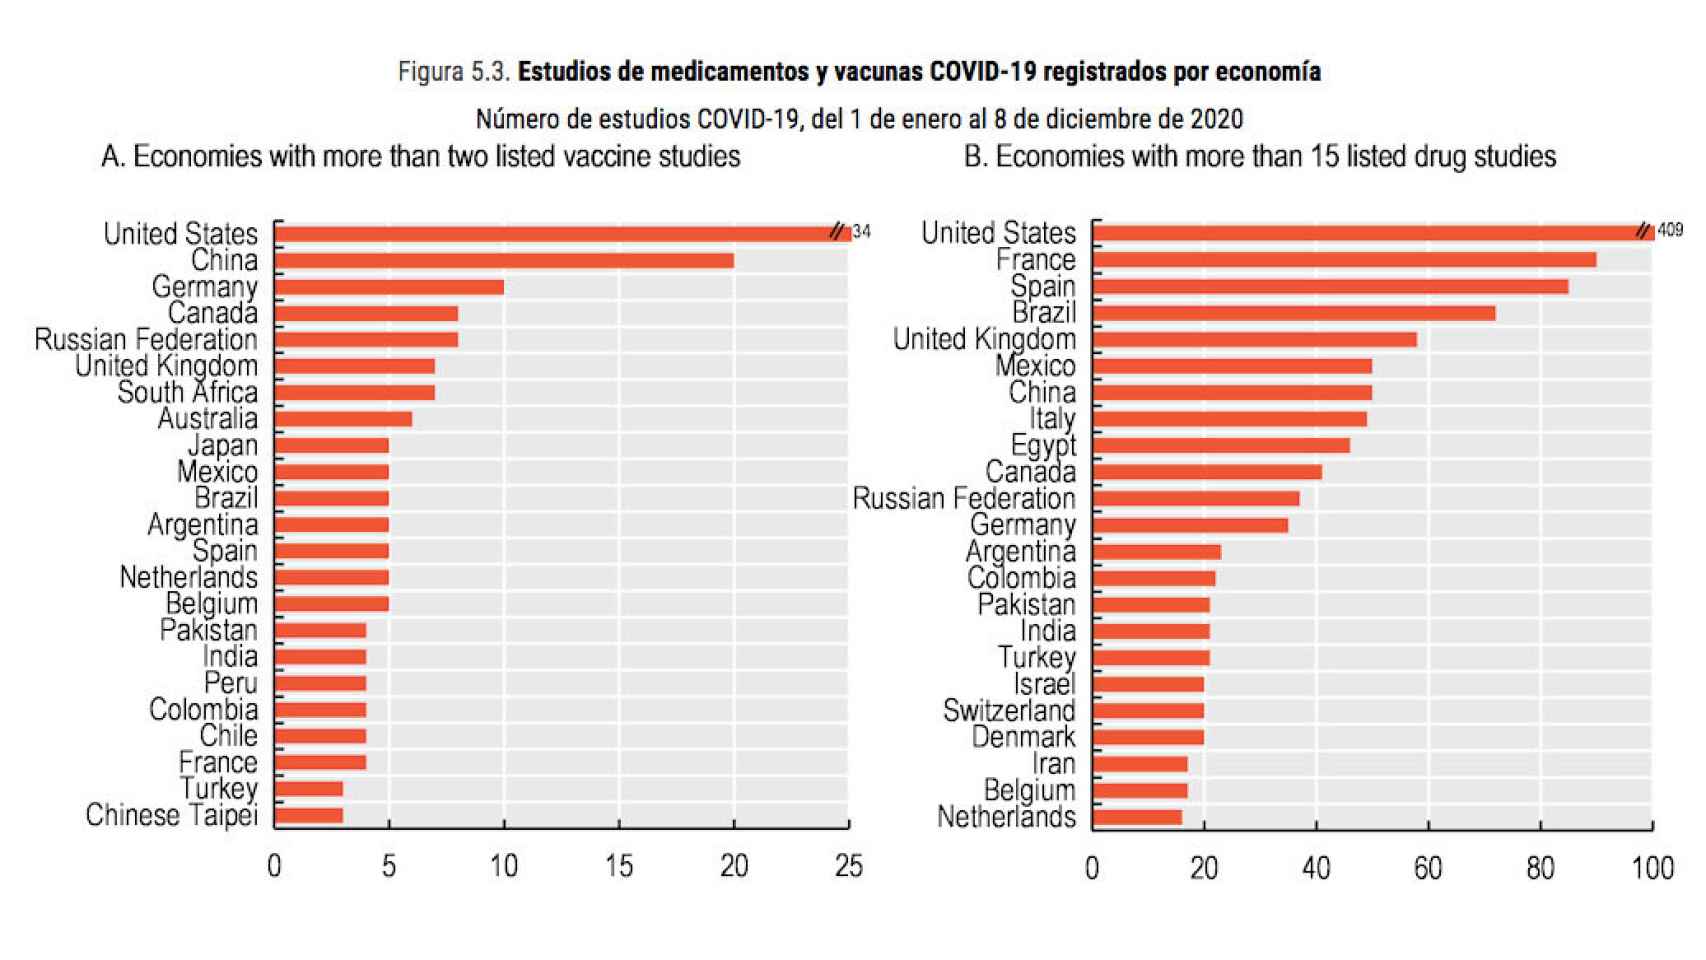 Ensayos clínicos de medicamentos y vacunas contra la Covid-19 registrados por países.